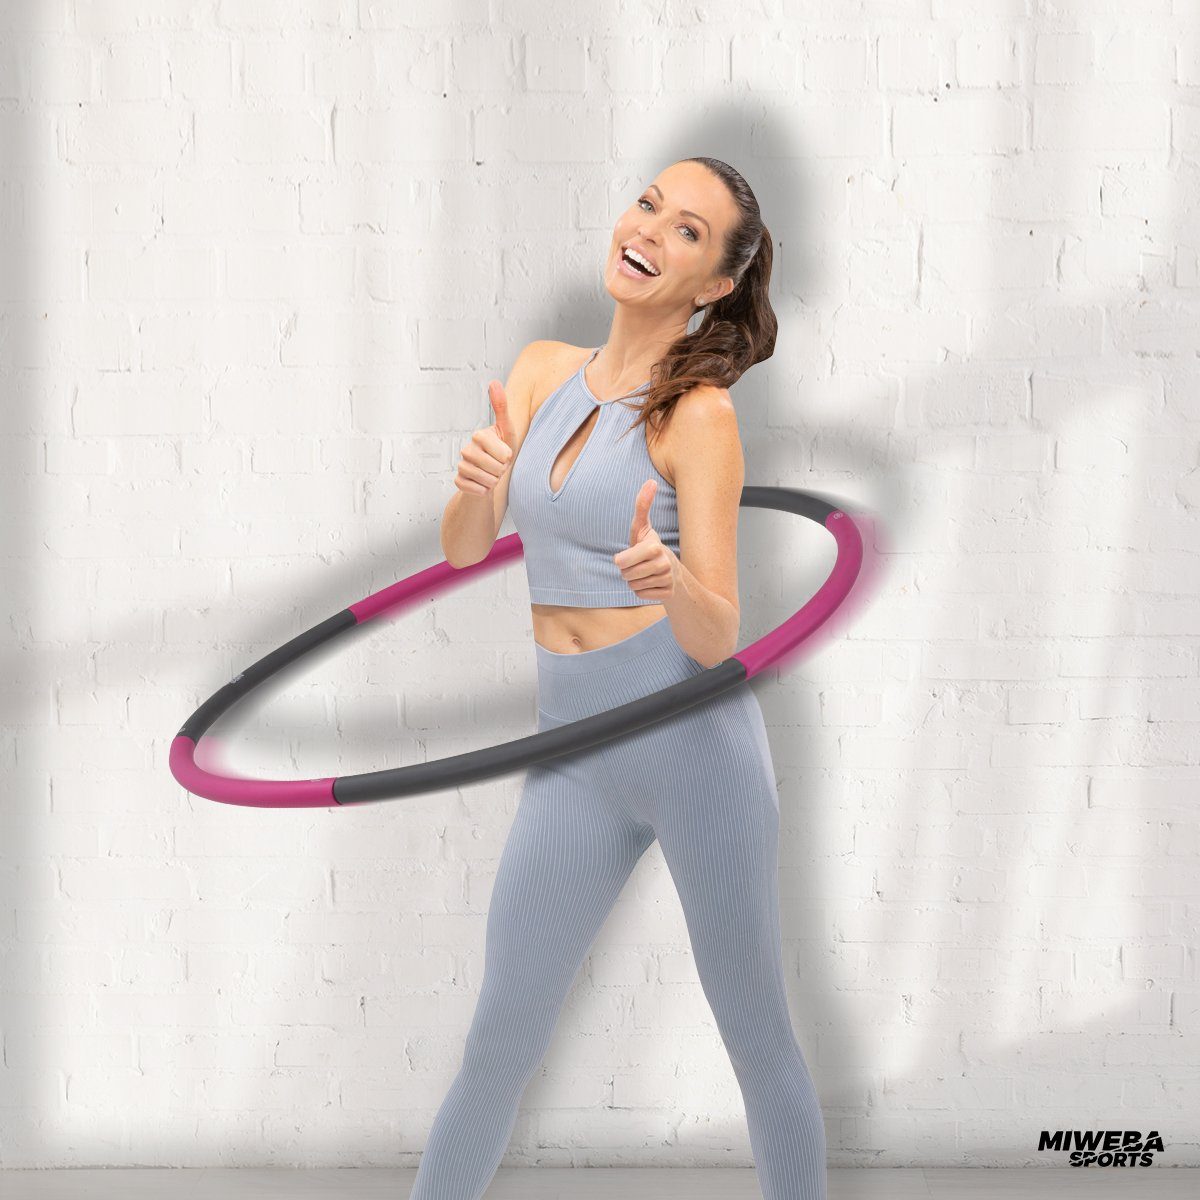 Miweba Sports Hula-Hoop-Reifen »Hula Hoop Fitness Reifen 0,8 kg für  Erwachsene, 6-teilig«, steckbar - Bauchtrainer zur Gewichtsreduktion und  Massage online kaufen | OTTO